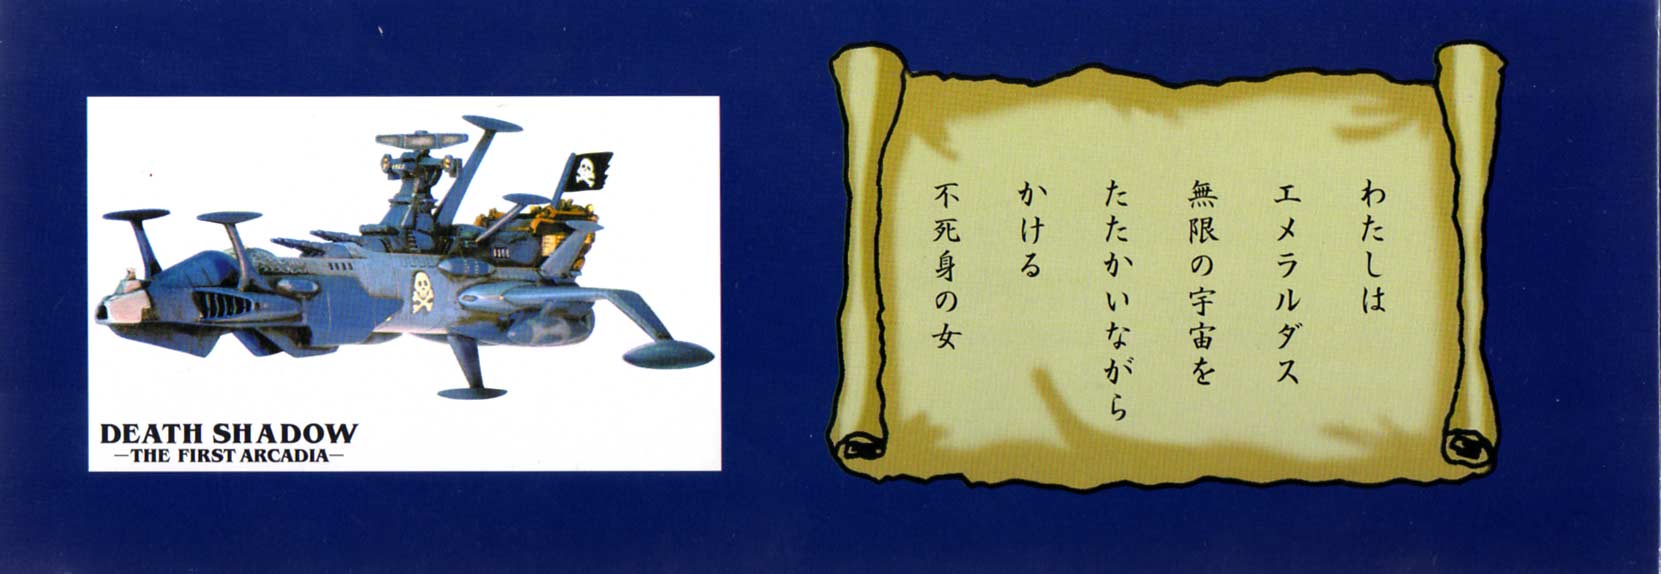 Packaging (latéral droite) du Death Shadow de Mabell dans la collection Leiji's Space ship (jouet)